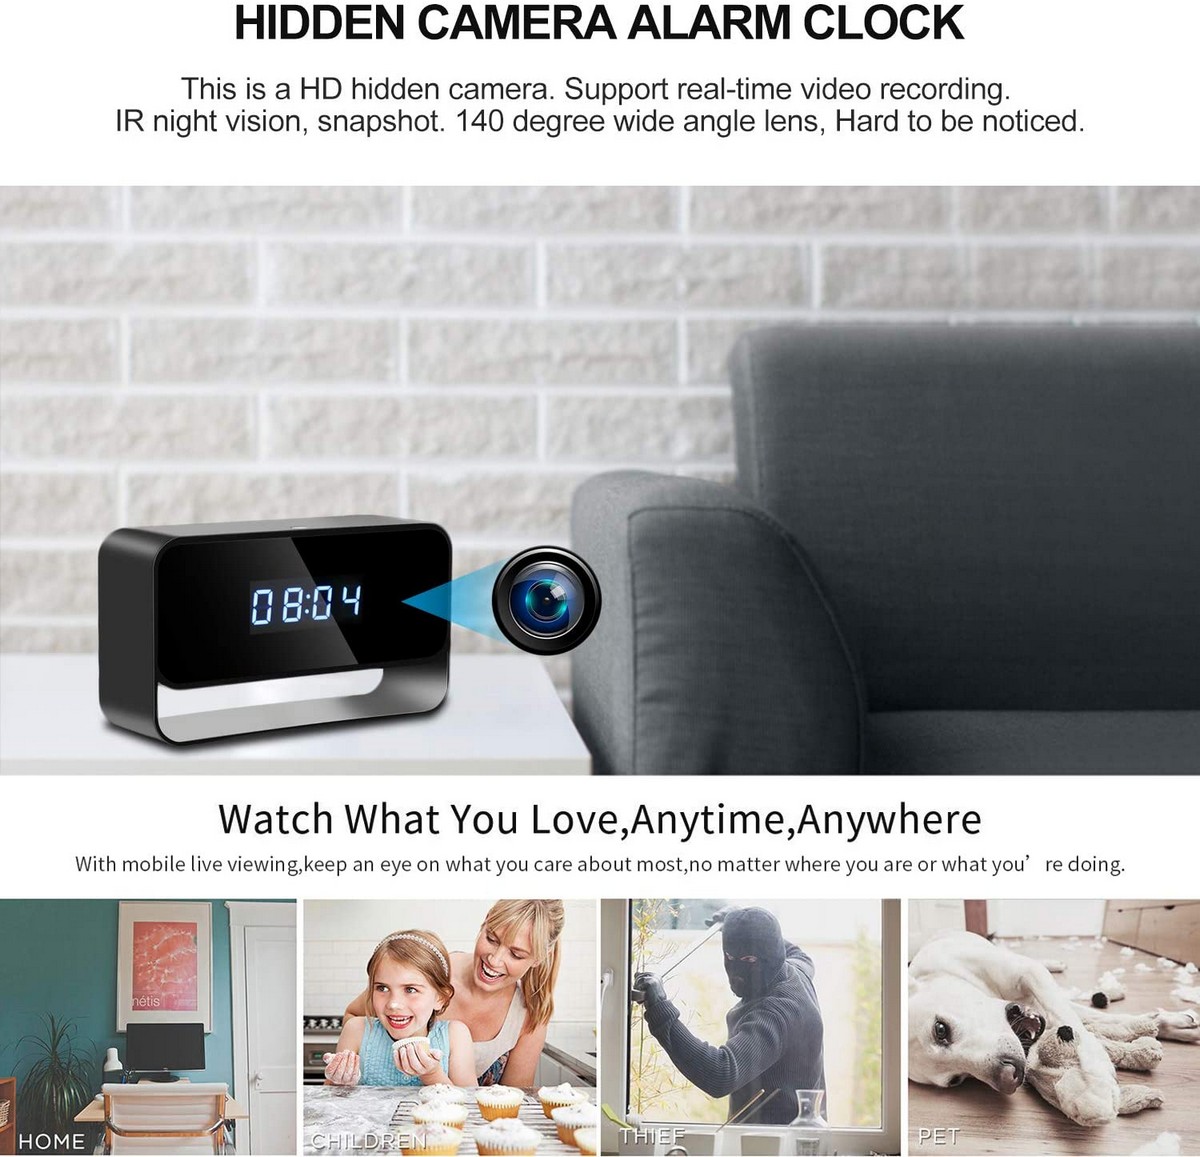 telecamera wifi per l'appartamento nascosta nella sveglia